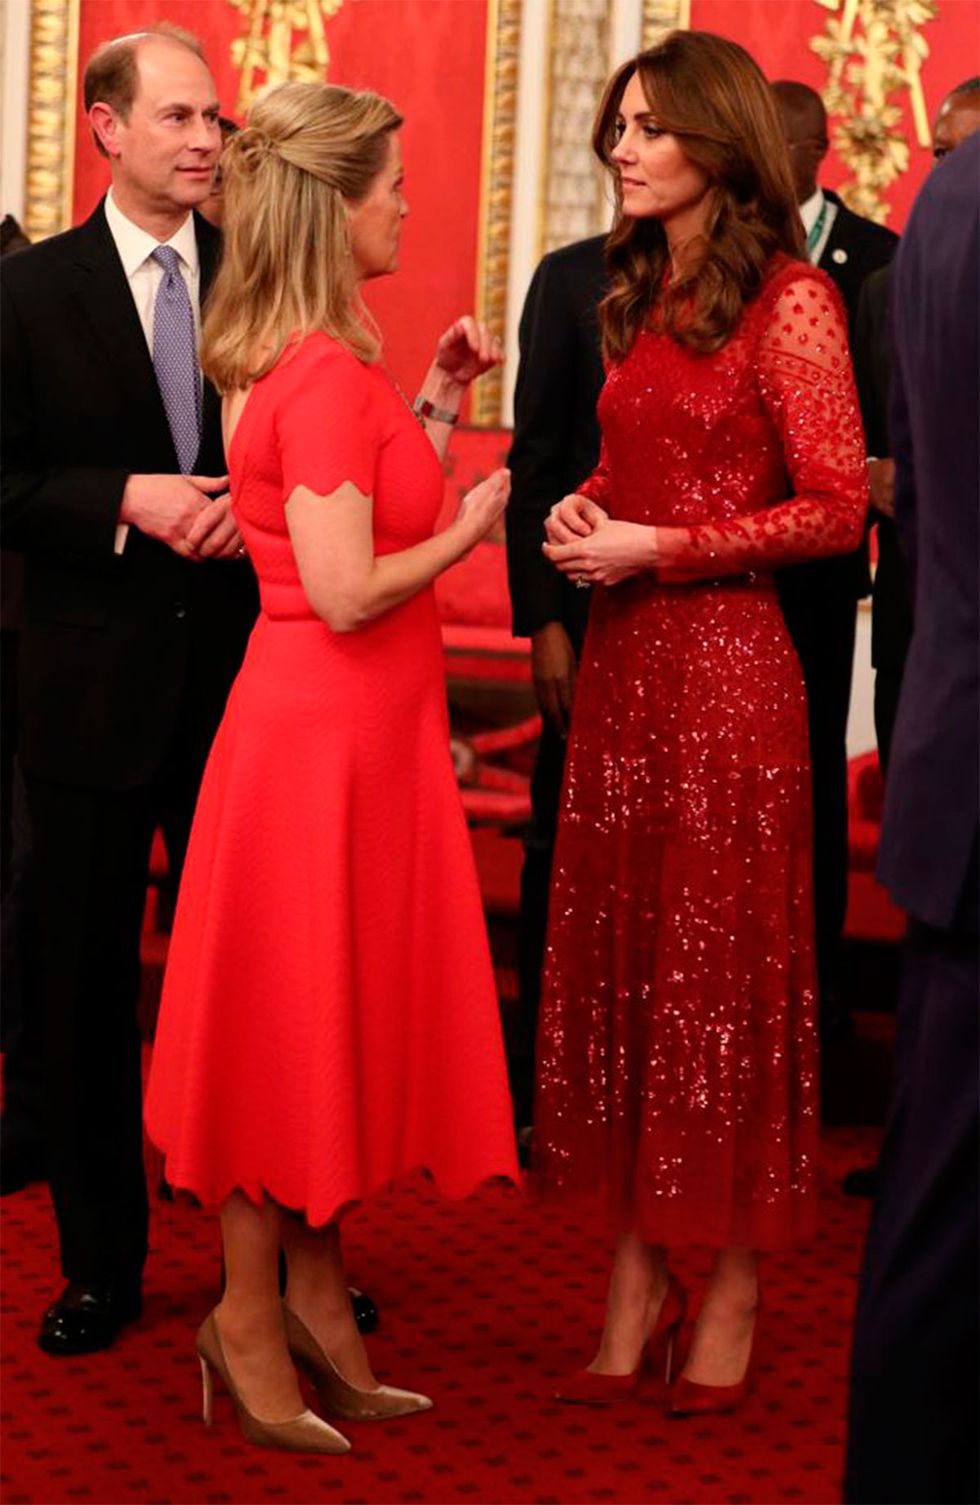 Eduardo de Inglaterra en una recepción real junto a su esposa Sofía Rhys-Jones y Kate Middelton